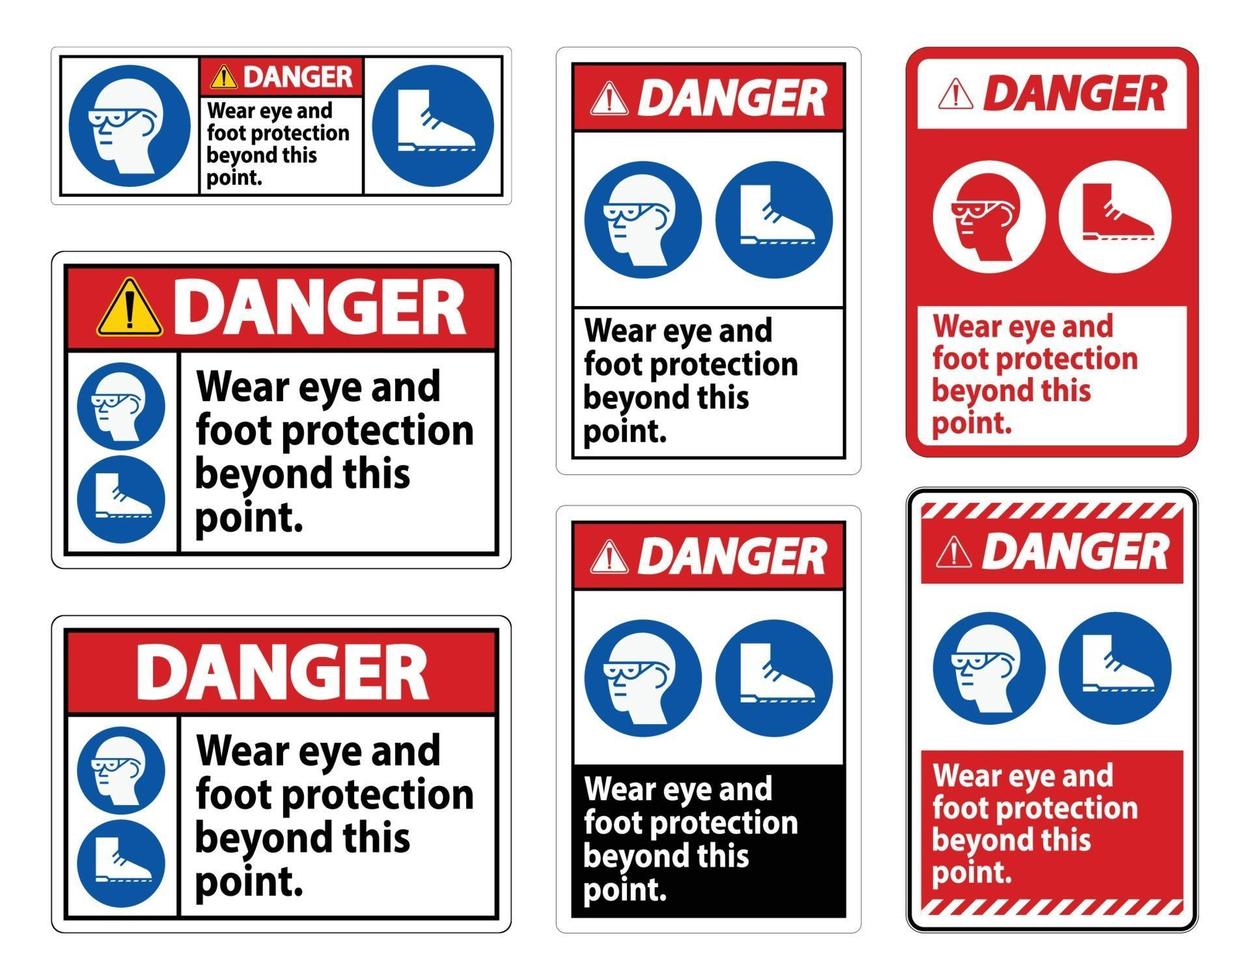 señal de peligro use protección para los ojos y los pies más allá de este punto con símbolos de ppe vector